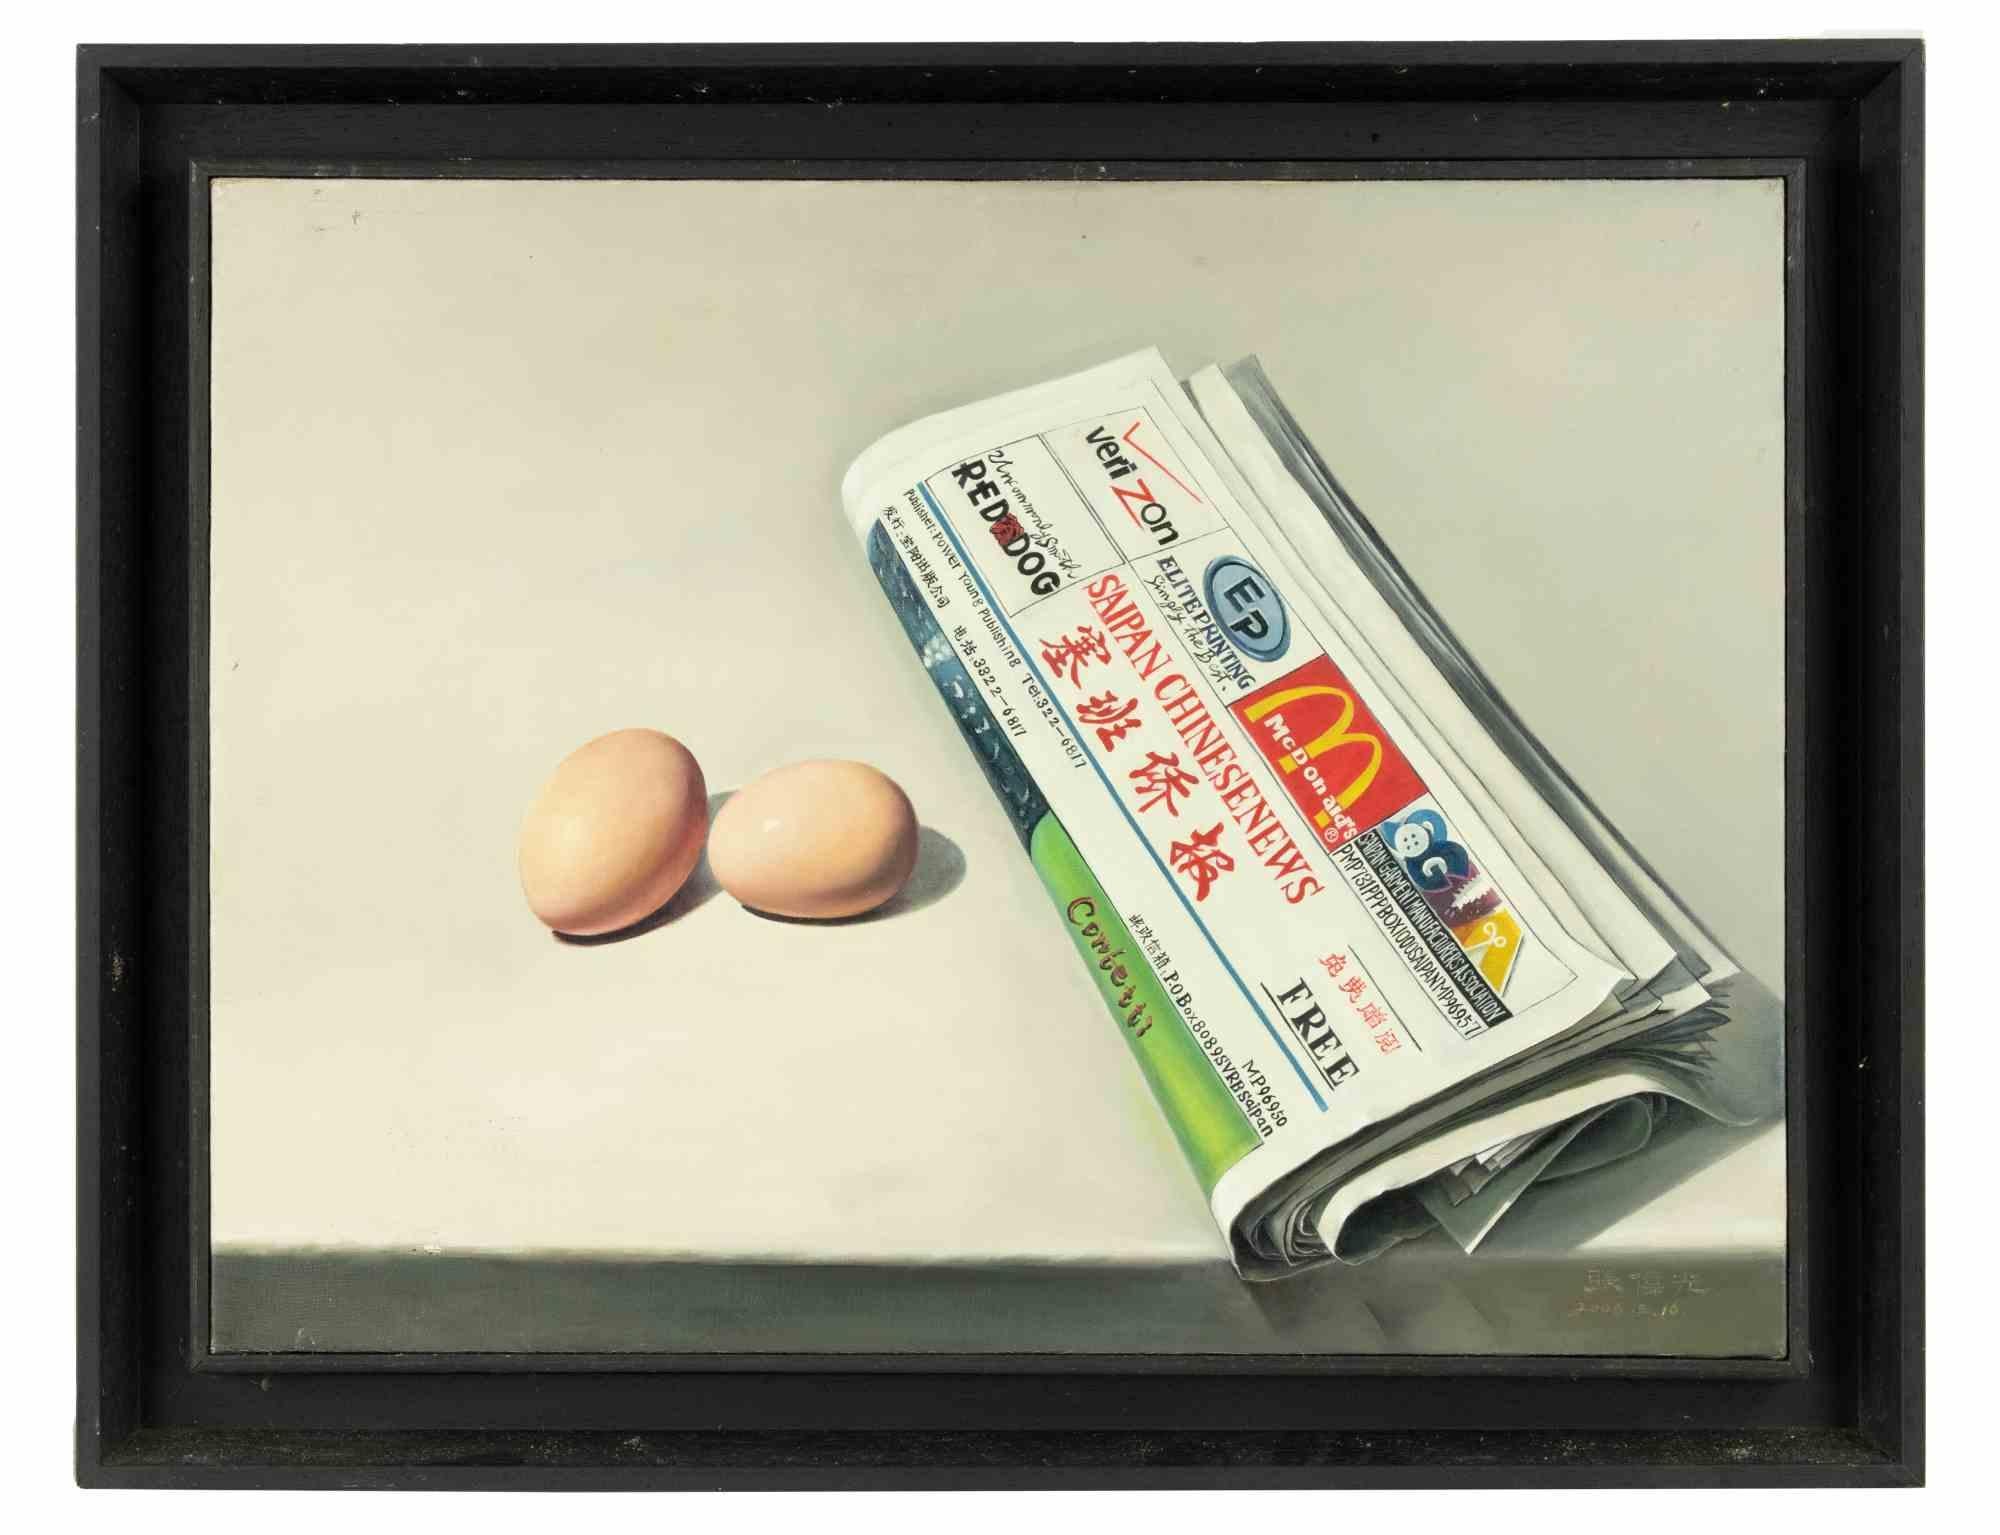 Eier und Zeitung ist ein originales Ölgemälde realisiert  von Zhang Wei Guang (Mirror) im Jahr 2006.

Einschließlich Rahmen.

Rechts unten handsigniert.

Signatur und verschiedene Zeichen in chinesischer Kalligrafie auf der Rückseite.

Sehr guter